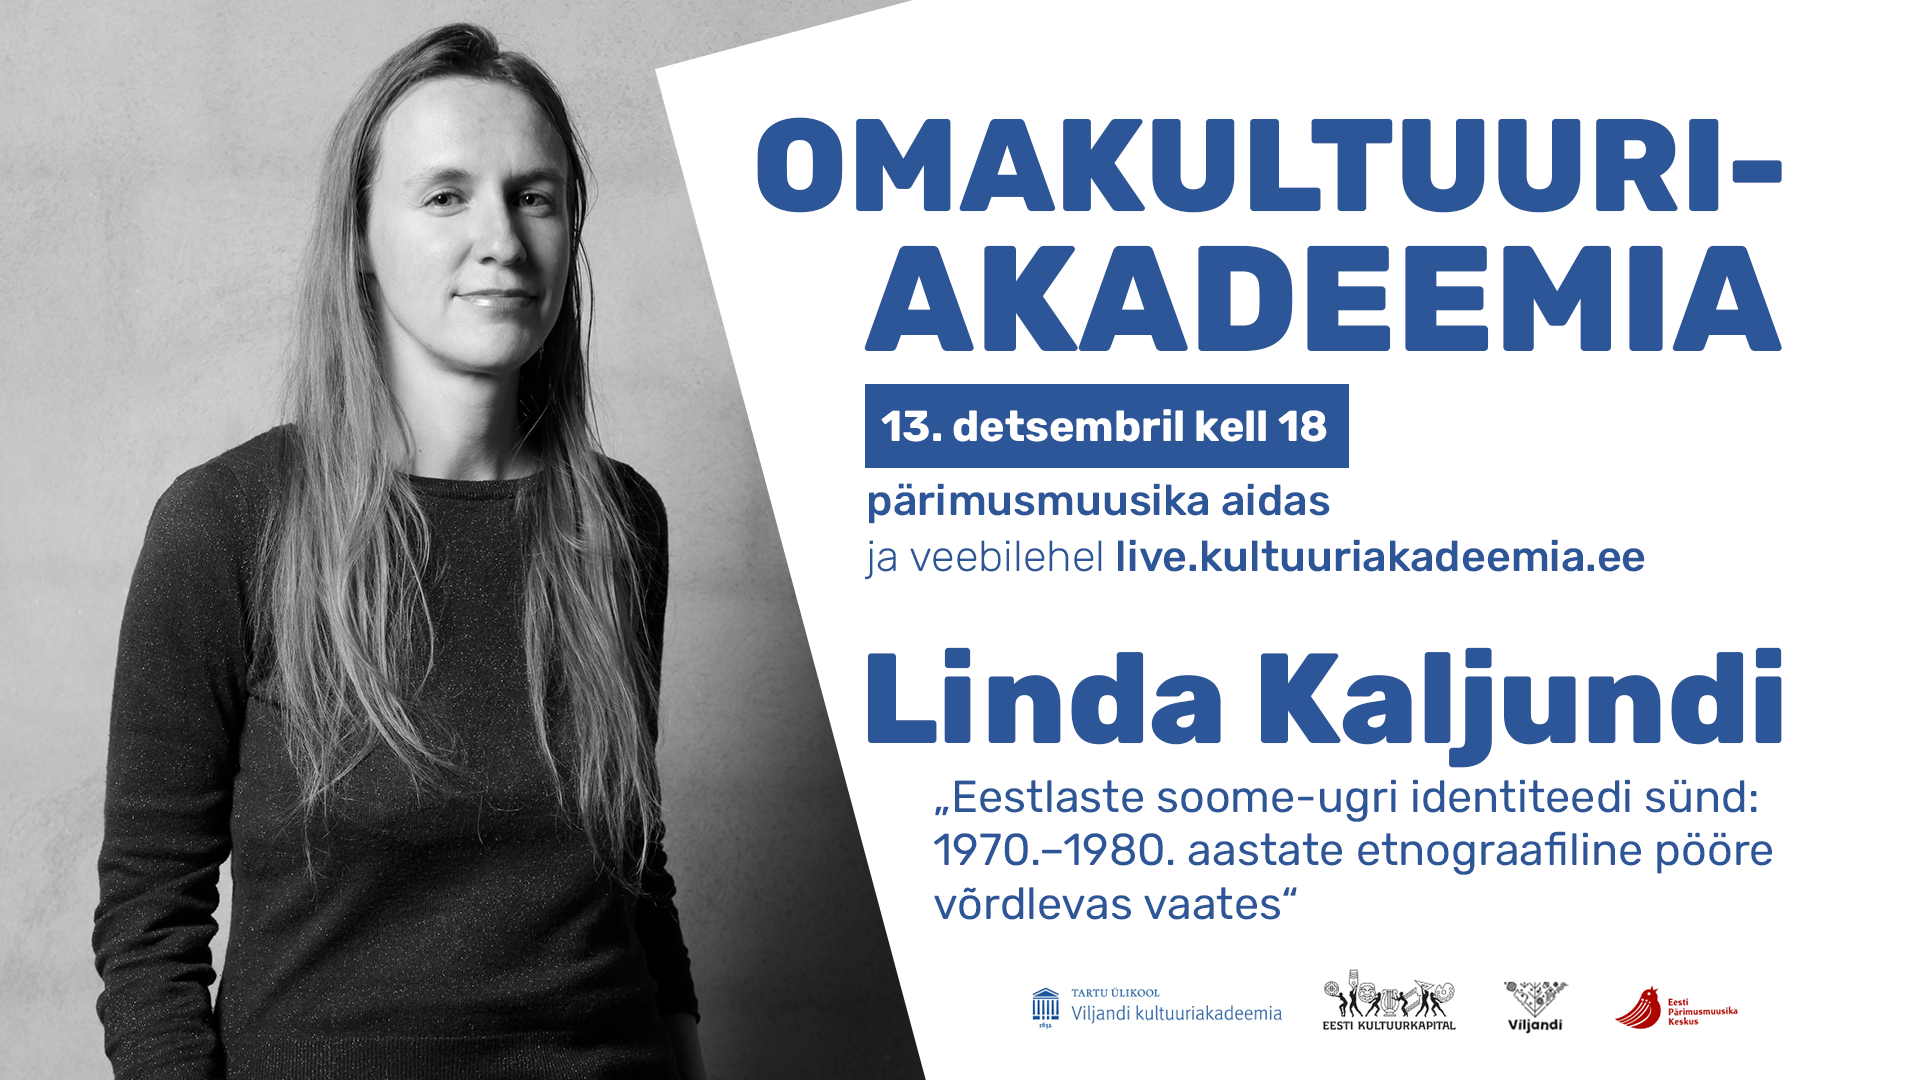 Omakultuuriakadeemia: Linda Kaljundi - Tartu Ülikooli Viljandi kultuuriakadeemia